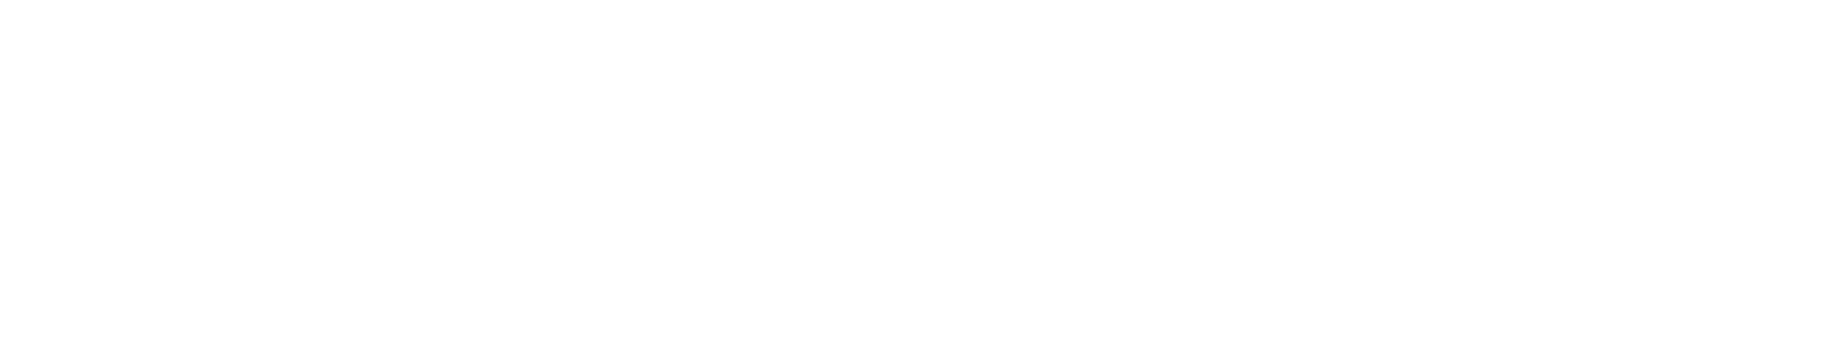 NAKANO SUCCESS PROGRAM